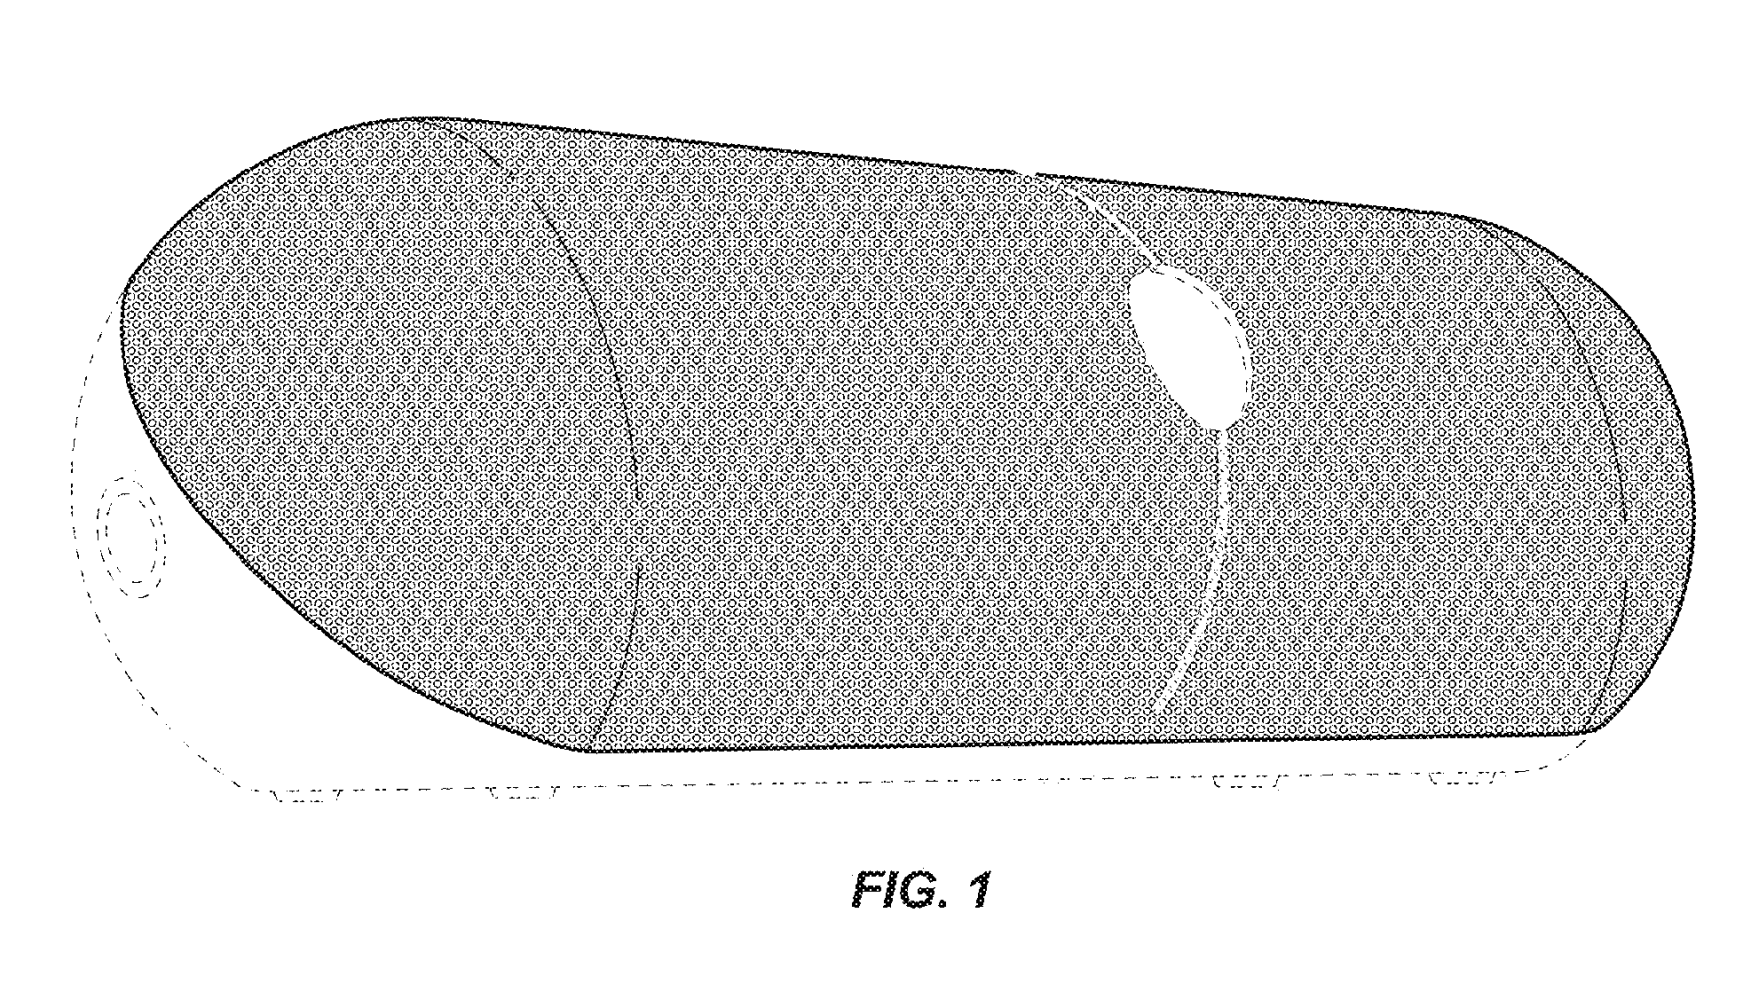 Dessin d'un haut-parleur large et bas extrait de la demande de brevet de conception d'Apple